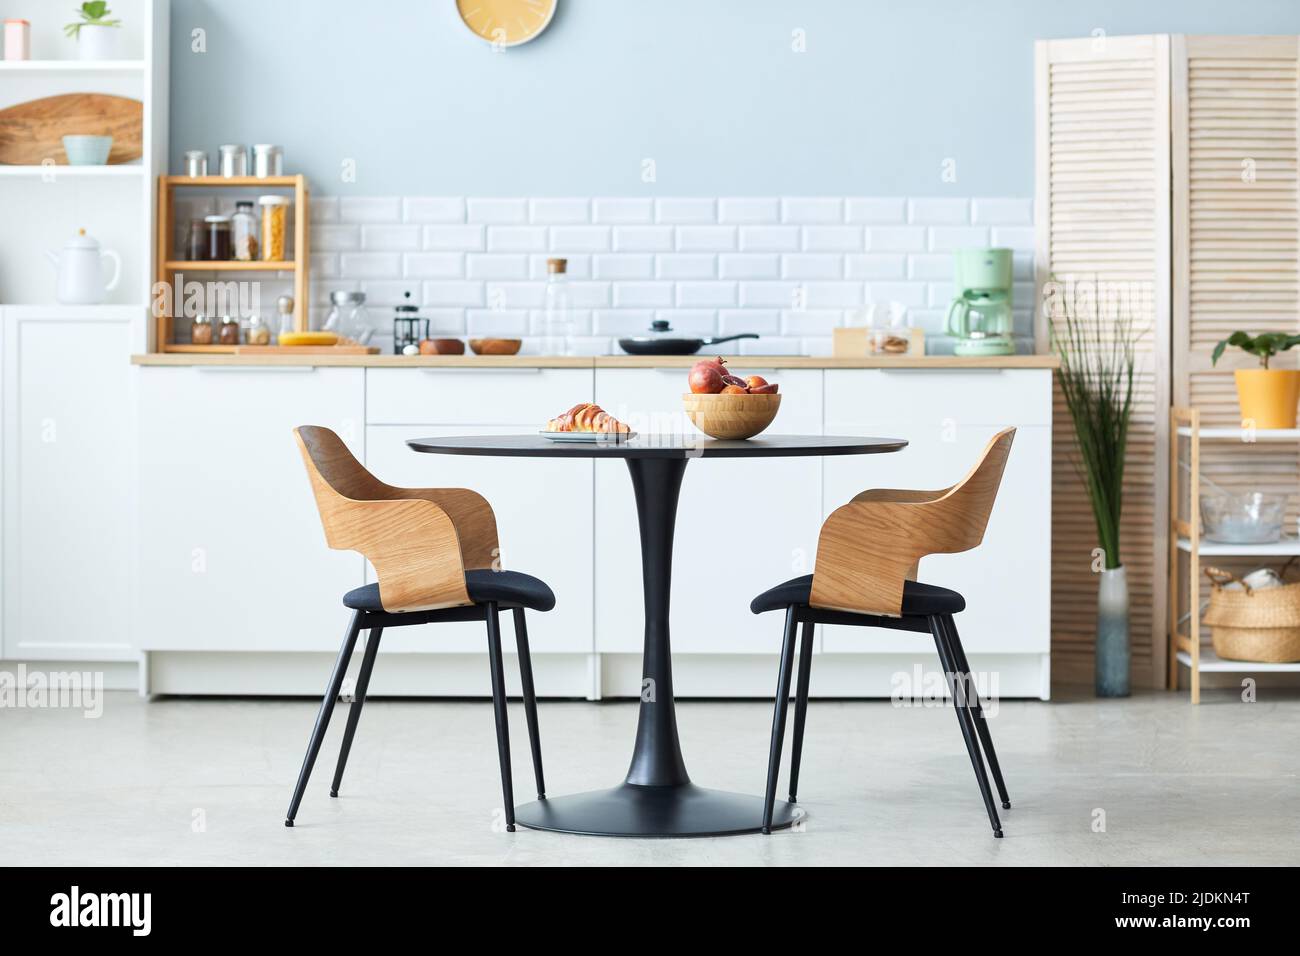 Vue latérale minimale d'une table et de chaises élégantes en bois avec détails noirs dans un minimum d'intérieur de cuisine, espace de copie Banque D'Images